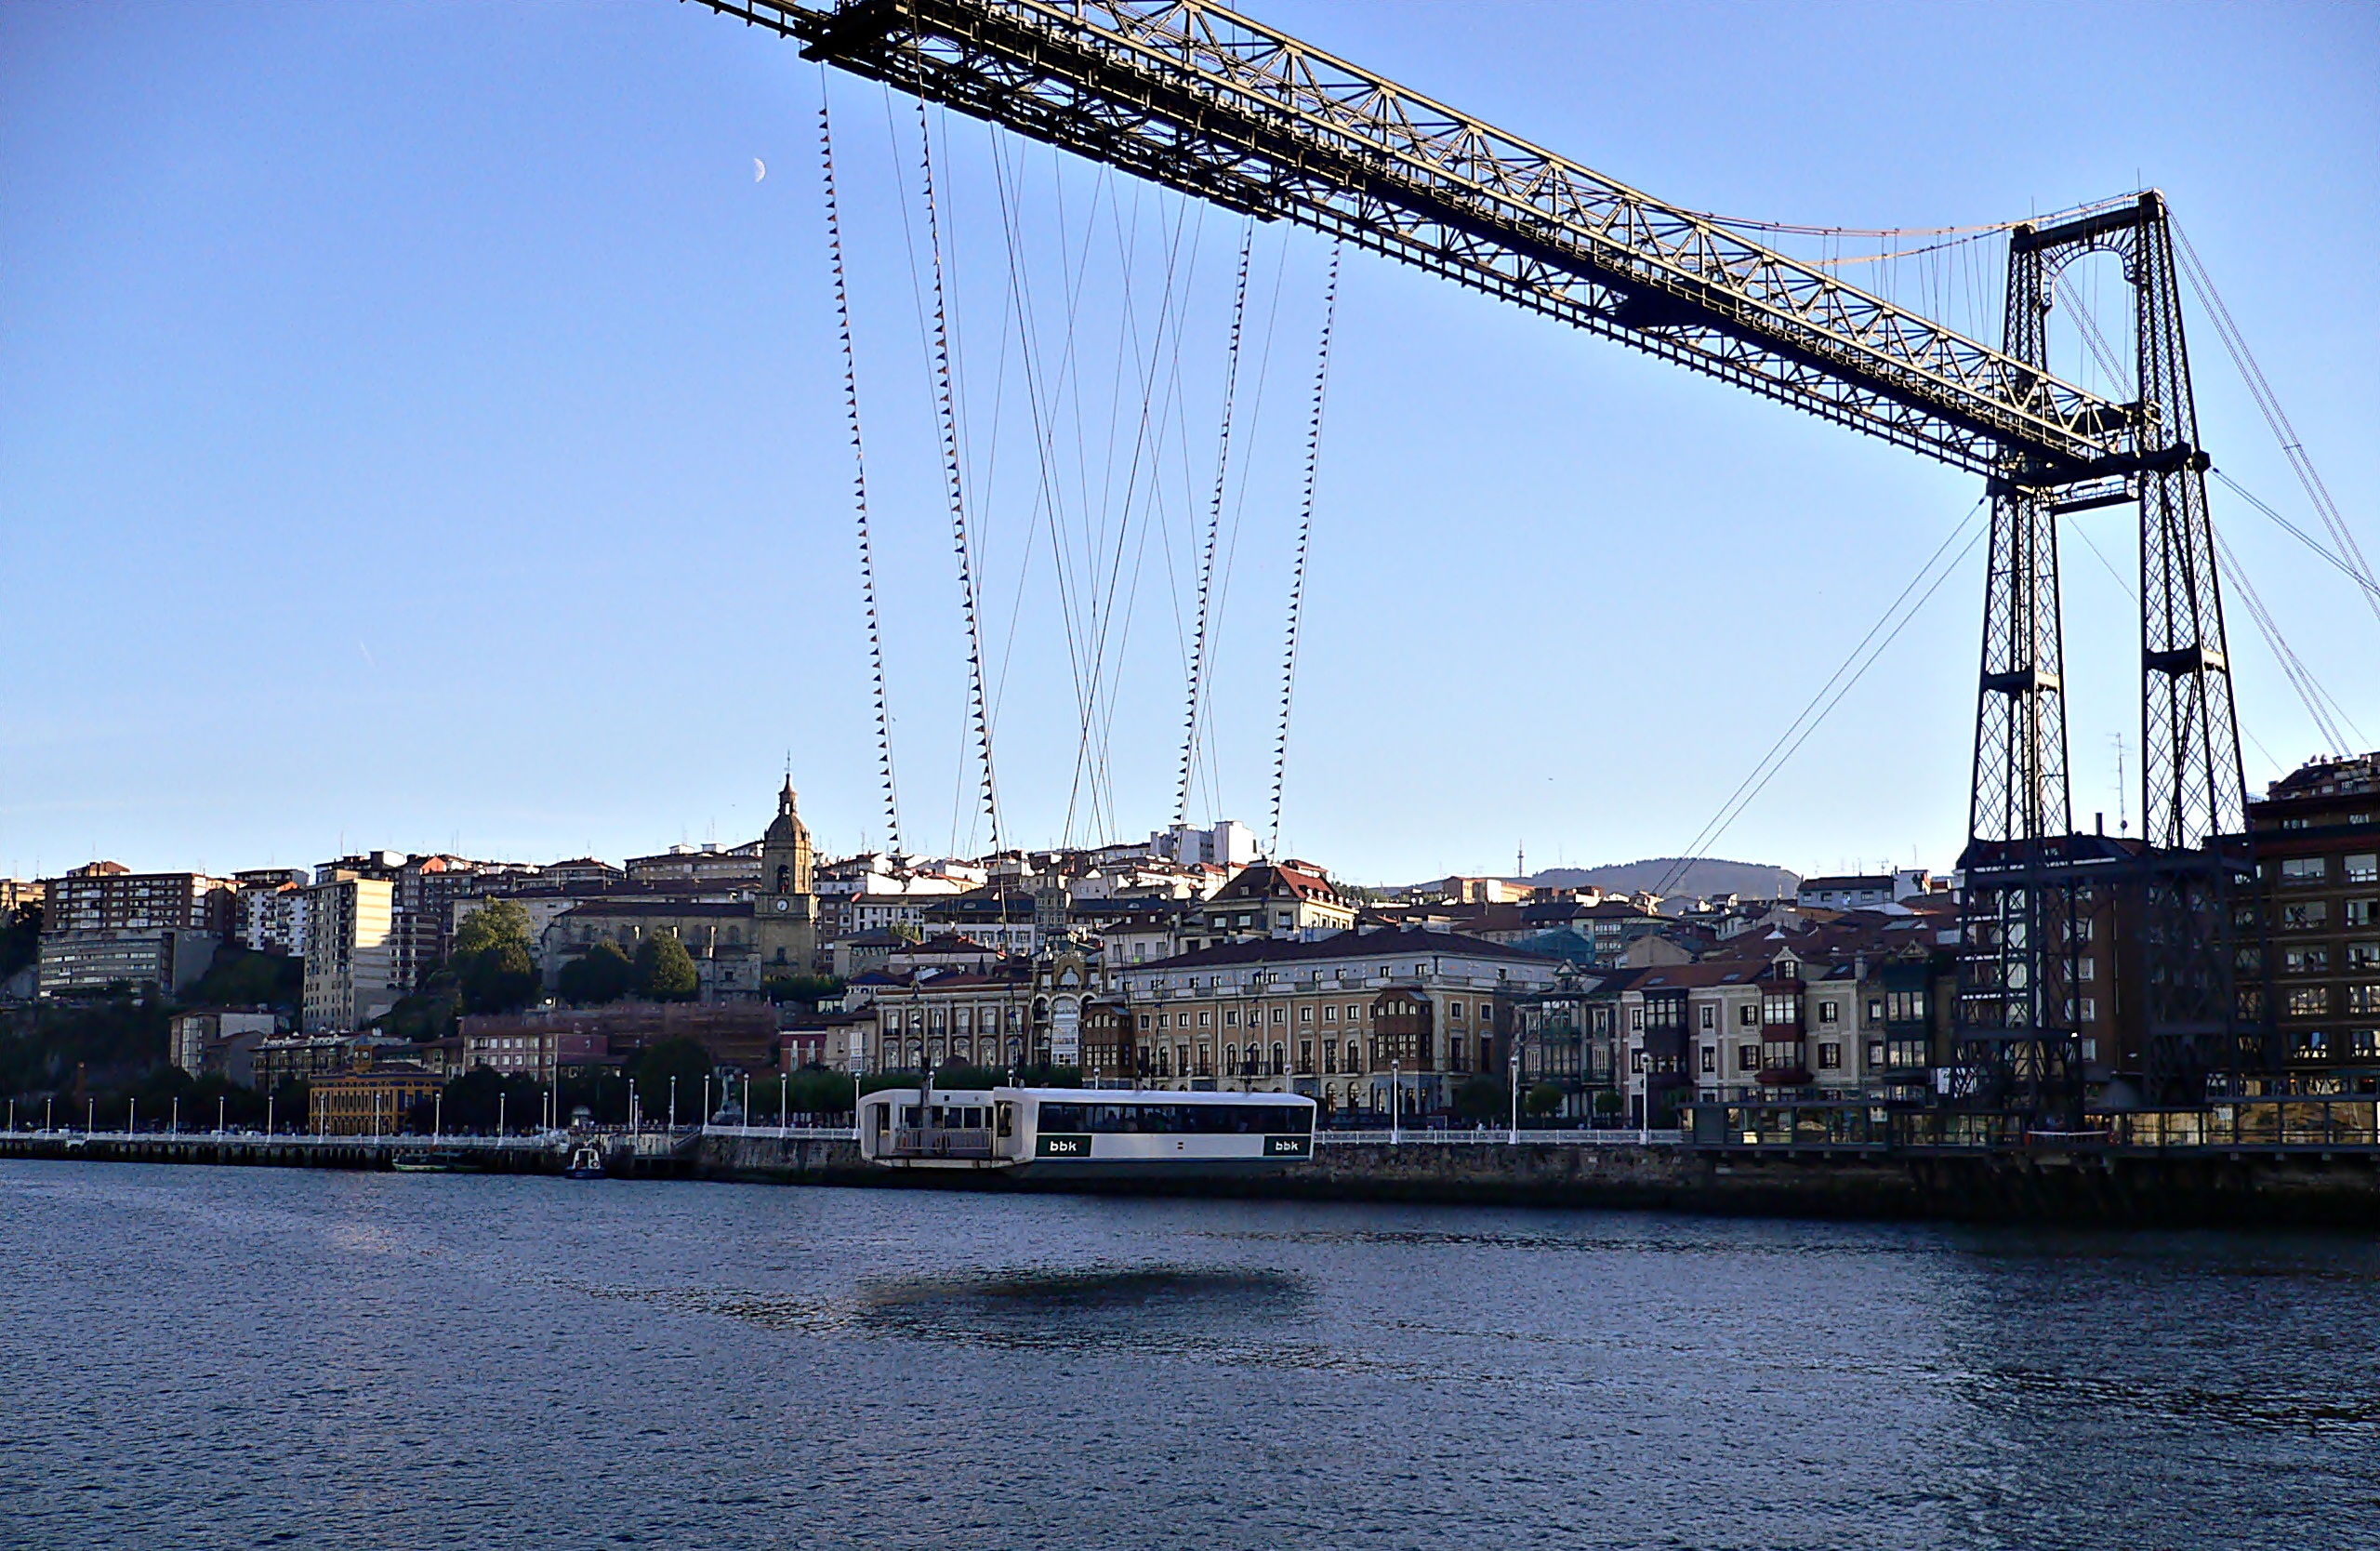 Скачать обои Puente De Vizcaya на телефон бесплатно